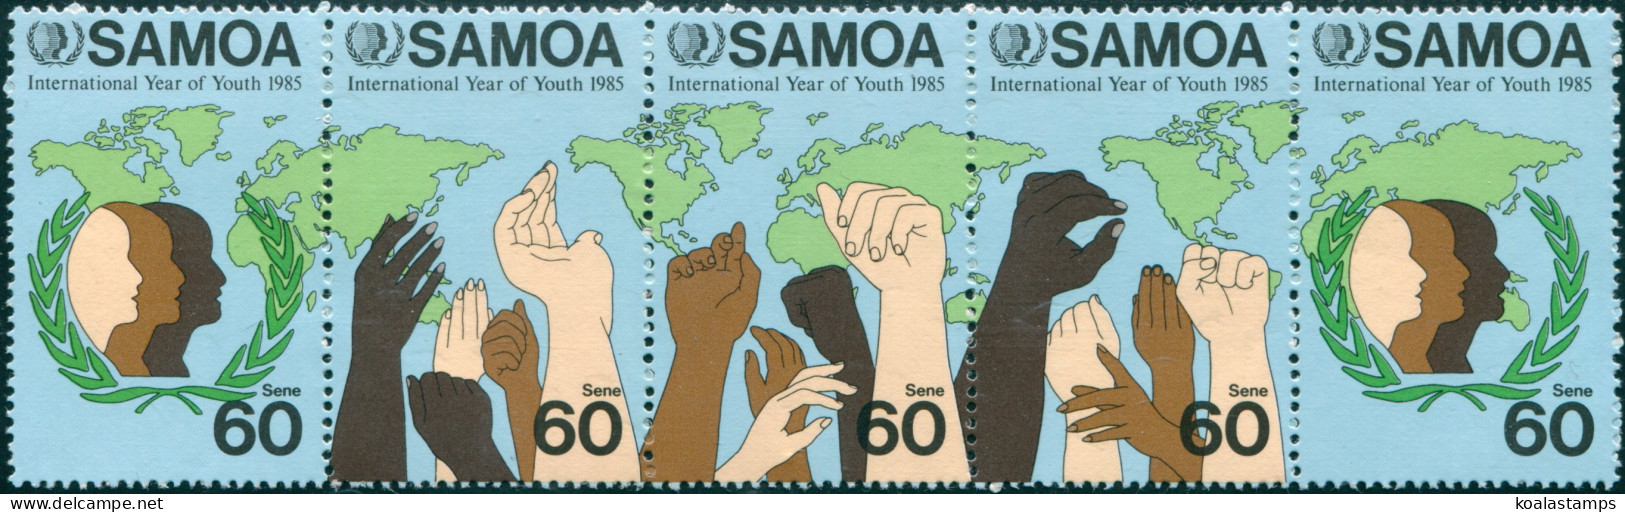 Samoa 1985 SG706a Youth Strip MNH - Samoa (Staat)